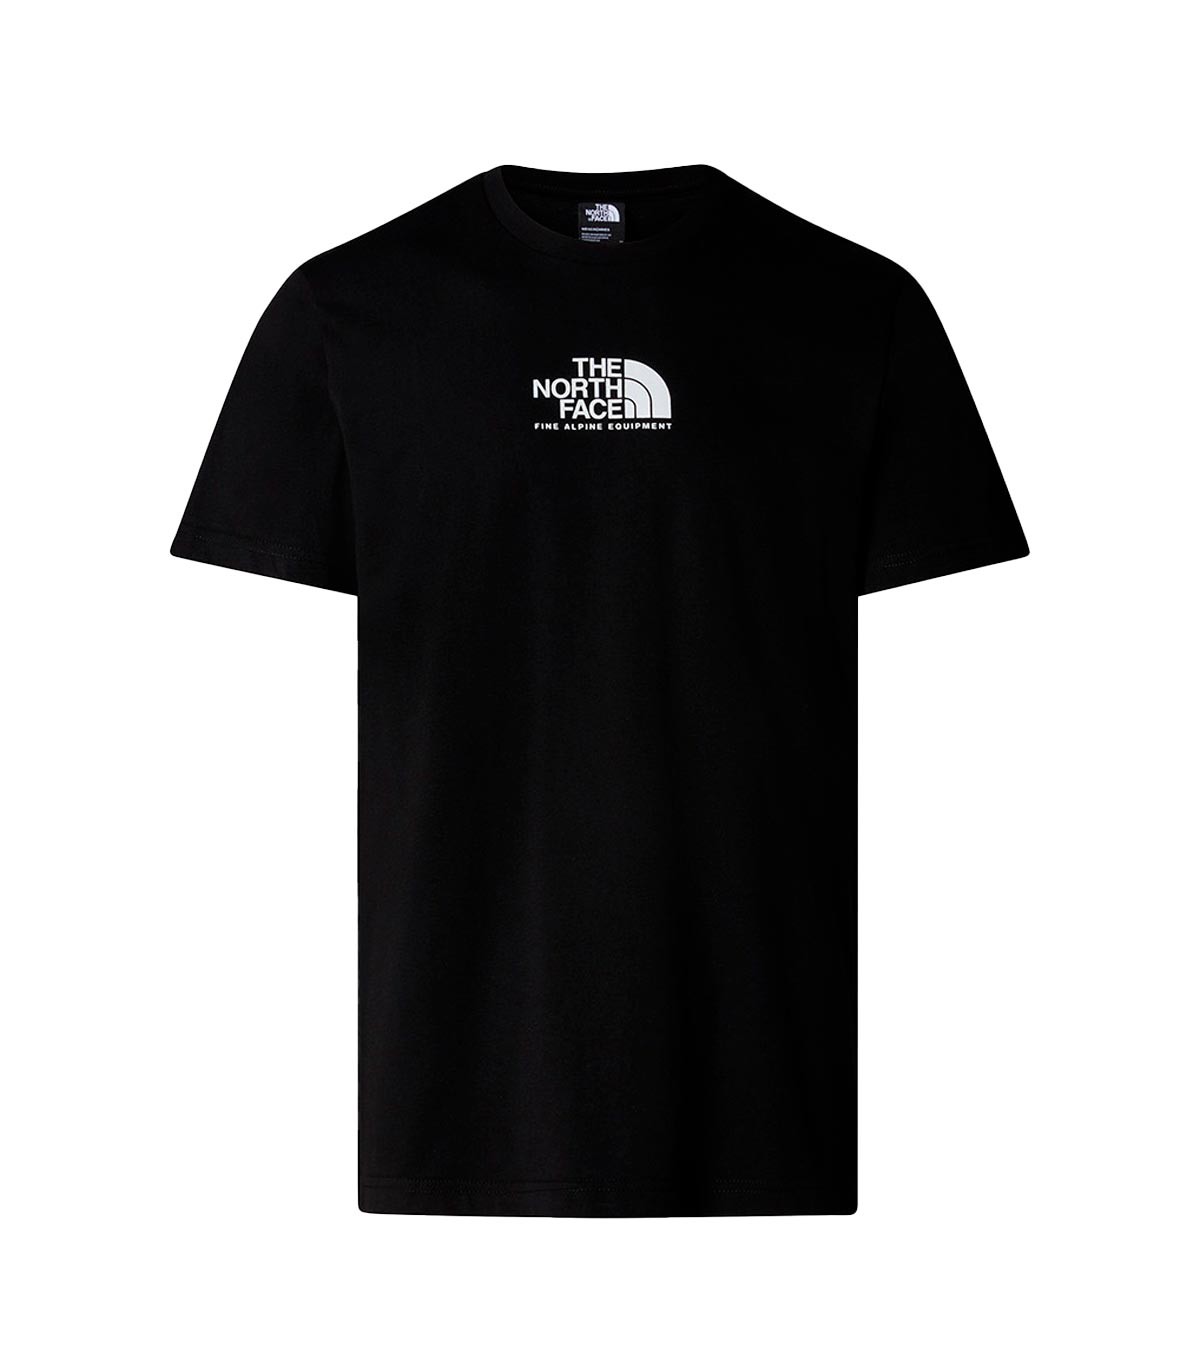 The North Face - Camiseta S/S Fine Alpine Eqp - Negro